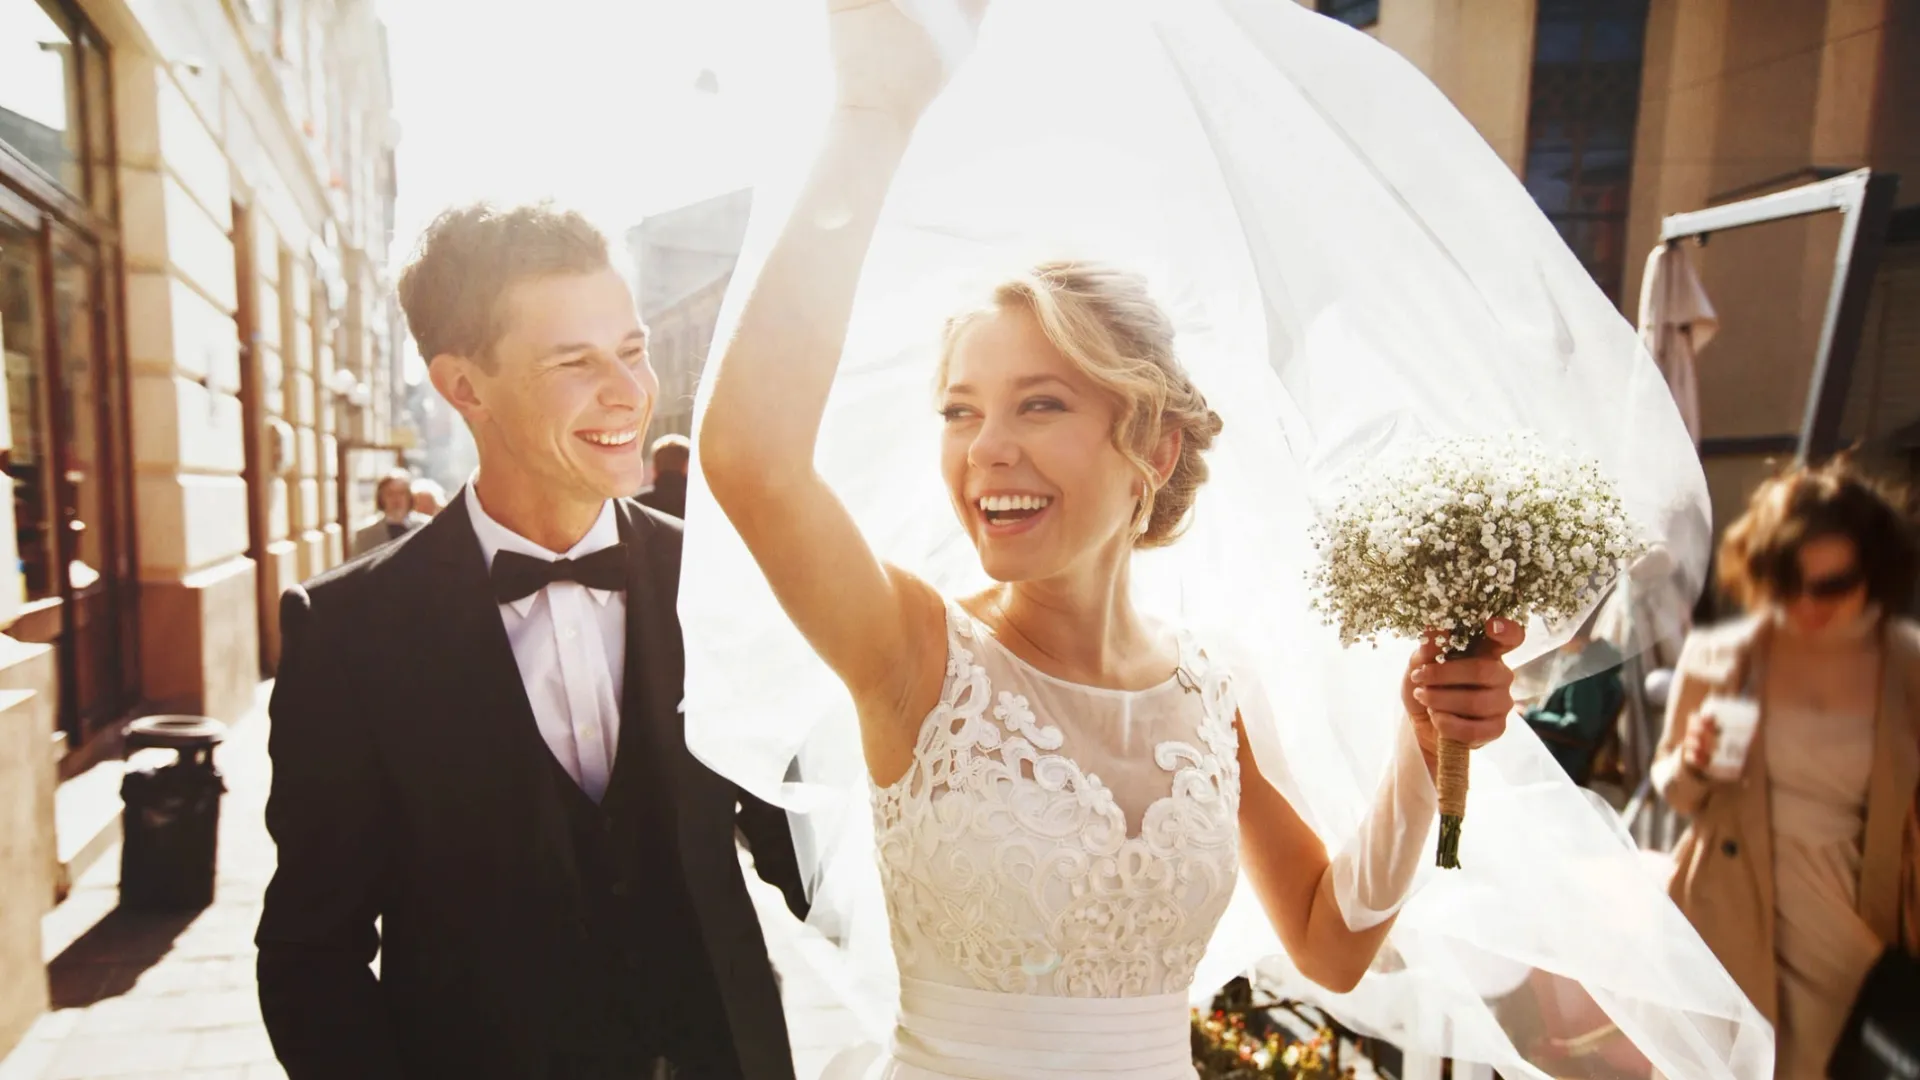 Счастливые браки заключаются на небесах, говорят звезды. Фото: IVASHstudio/Shutterstock/Fotodom